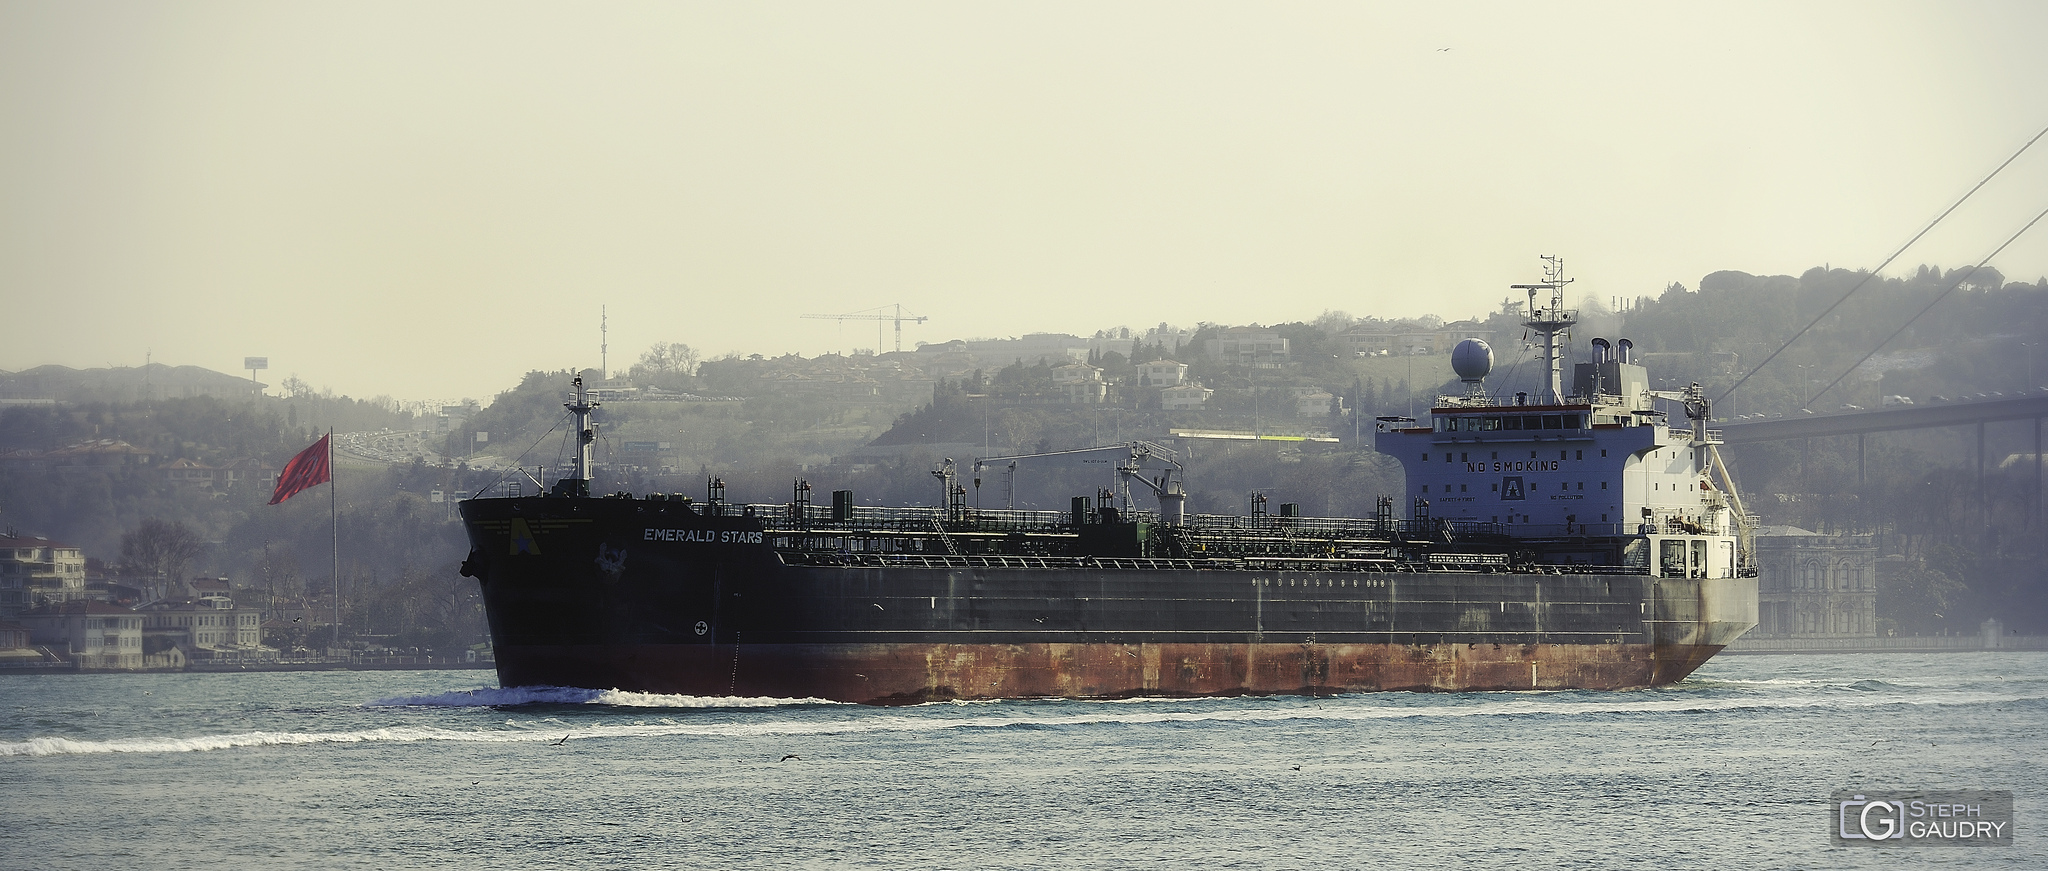 EMERALD STARS Chemical/Oil Tanker - Bosphorus near Istanbul [Cliquez pour lancer le diaporama]